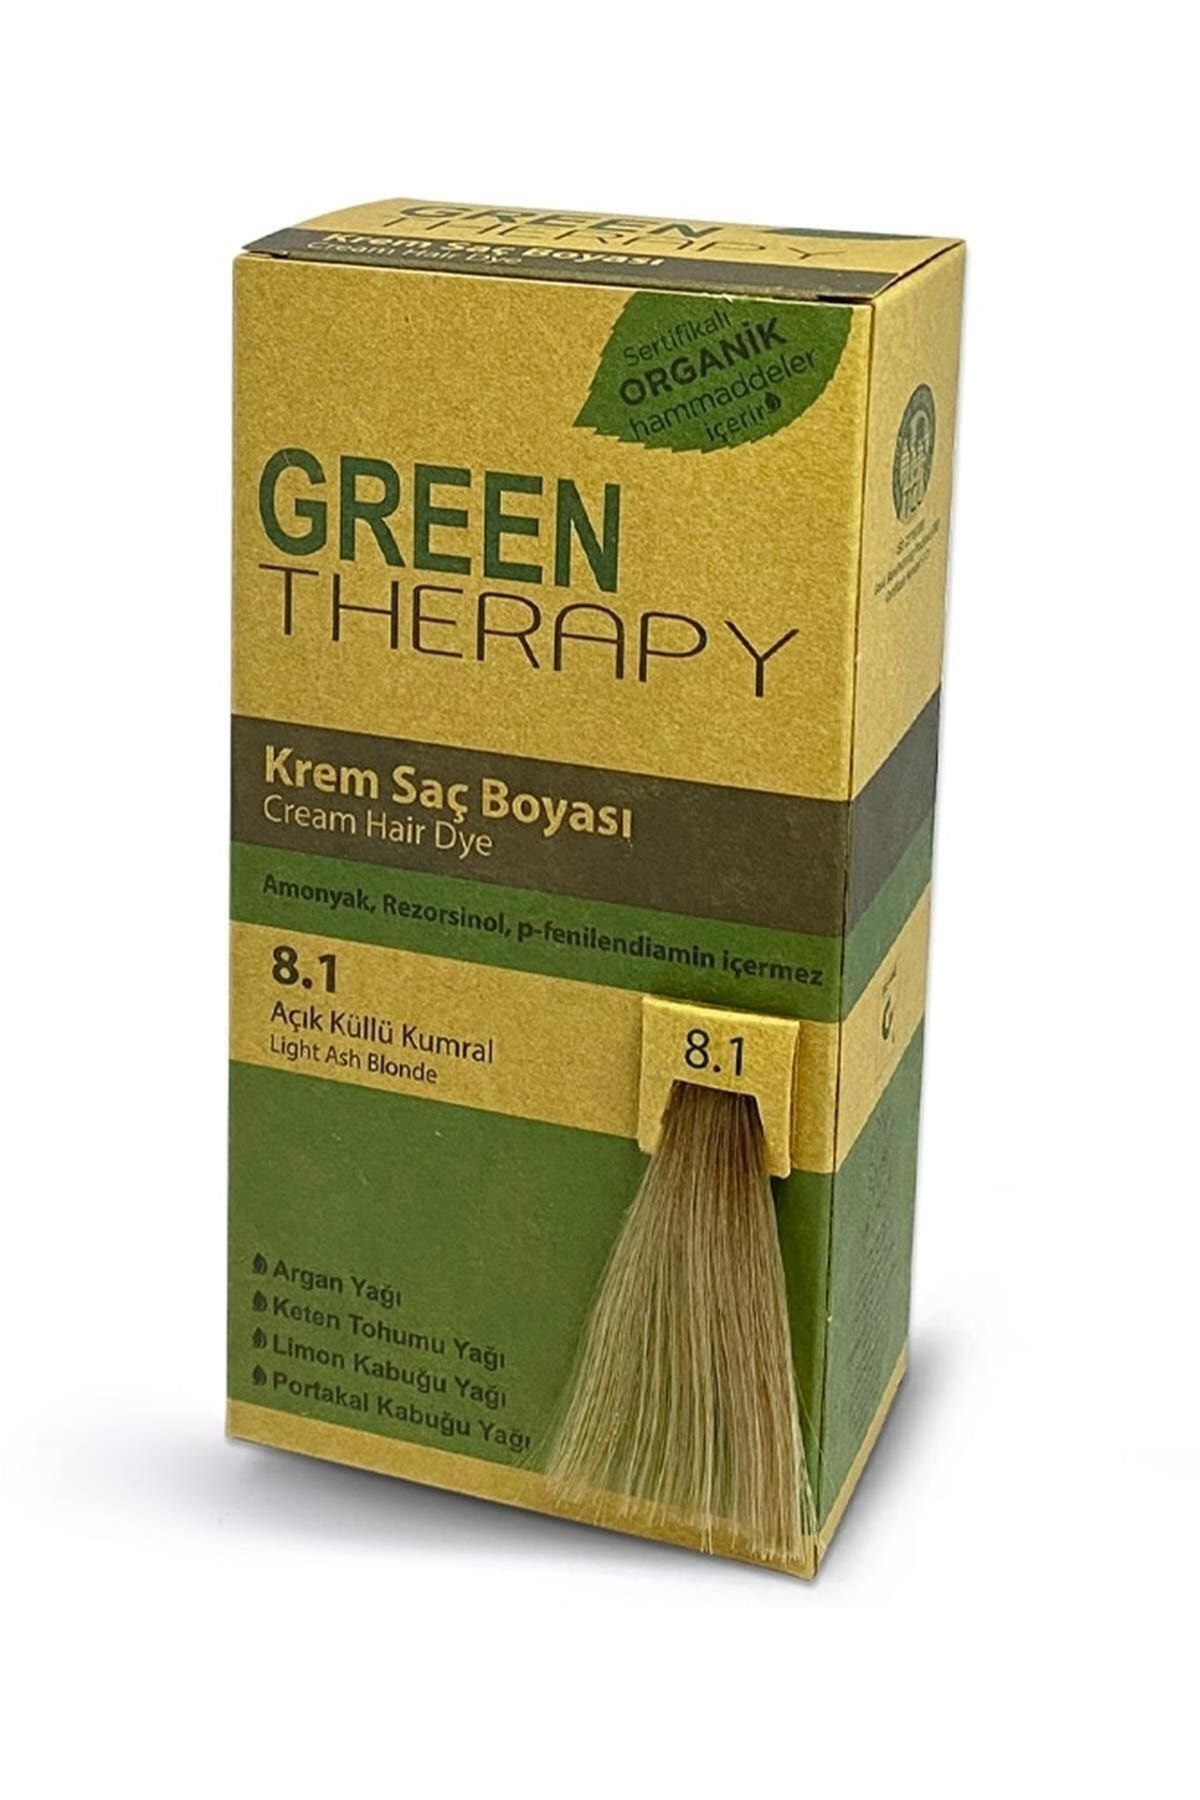 Green Therapy Krem Saç Boyası Argan Yağlı 8.1 Açık Küllü Kumral ,,natural1119